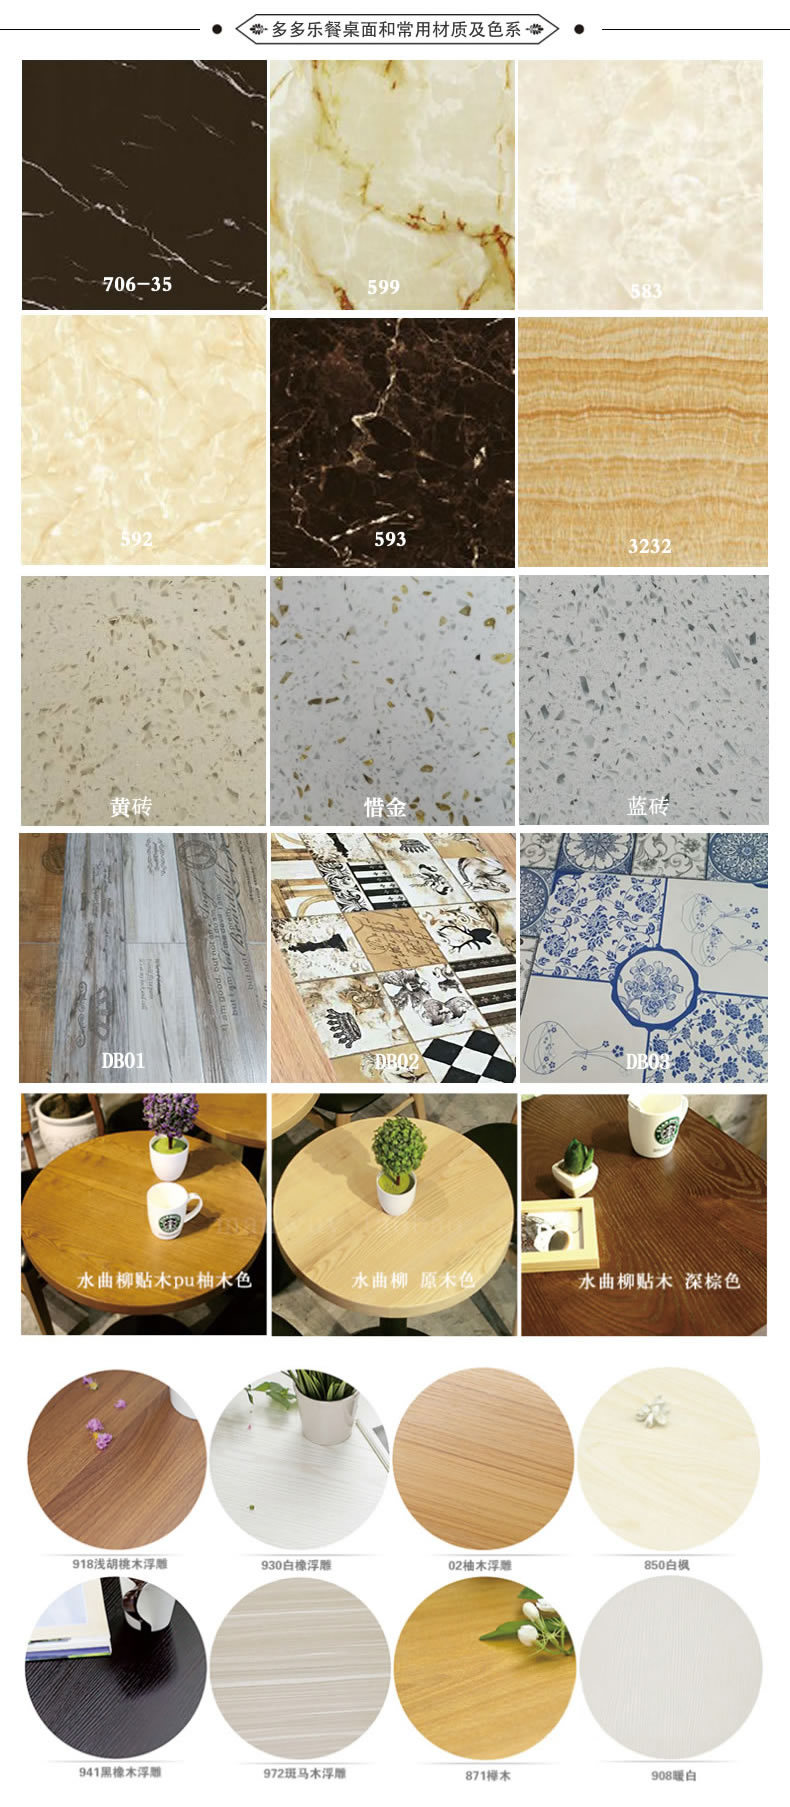 深圳餐厅家具厂自助火锅餐桌方形电磁炉火锅桌子四人位大理石餐桌示例图18